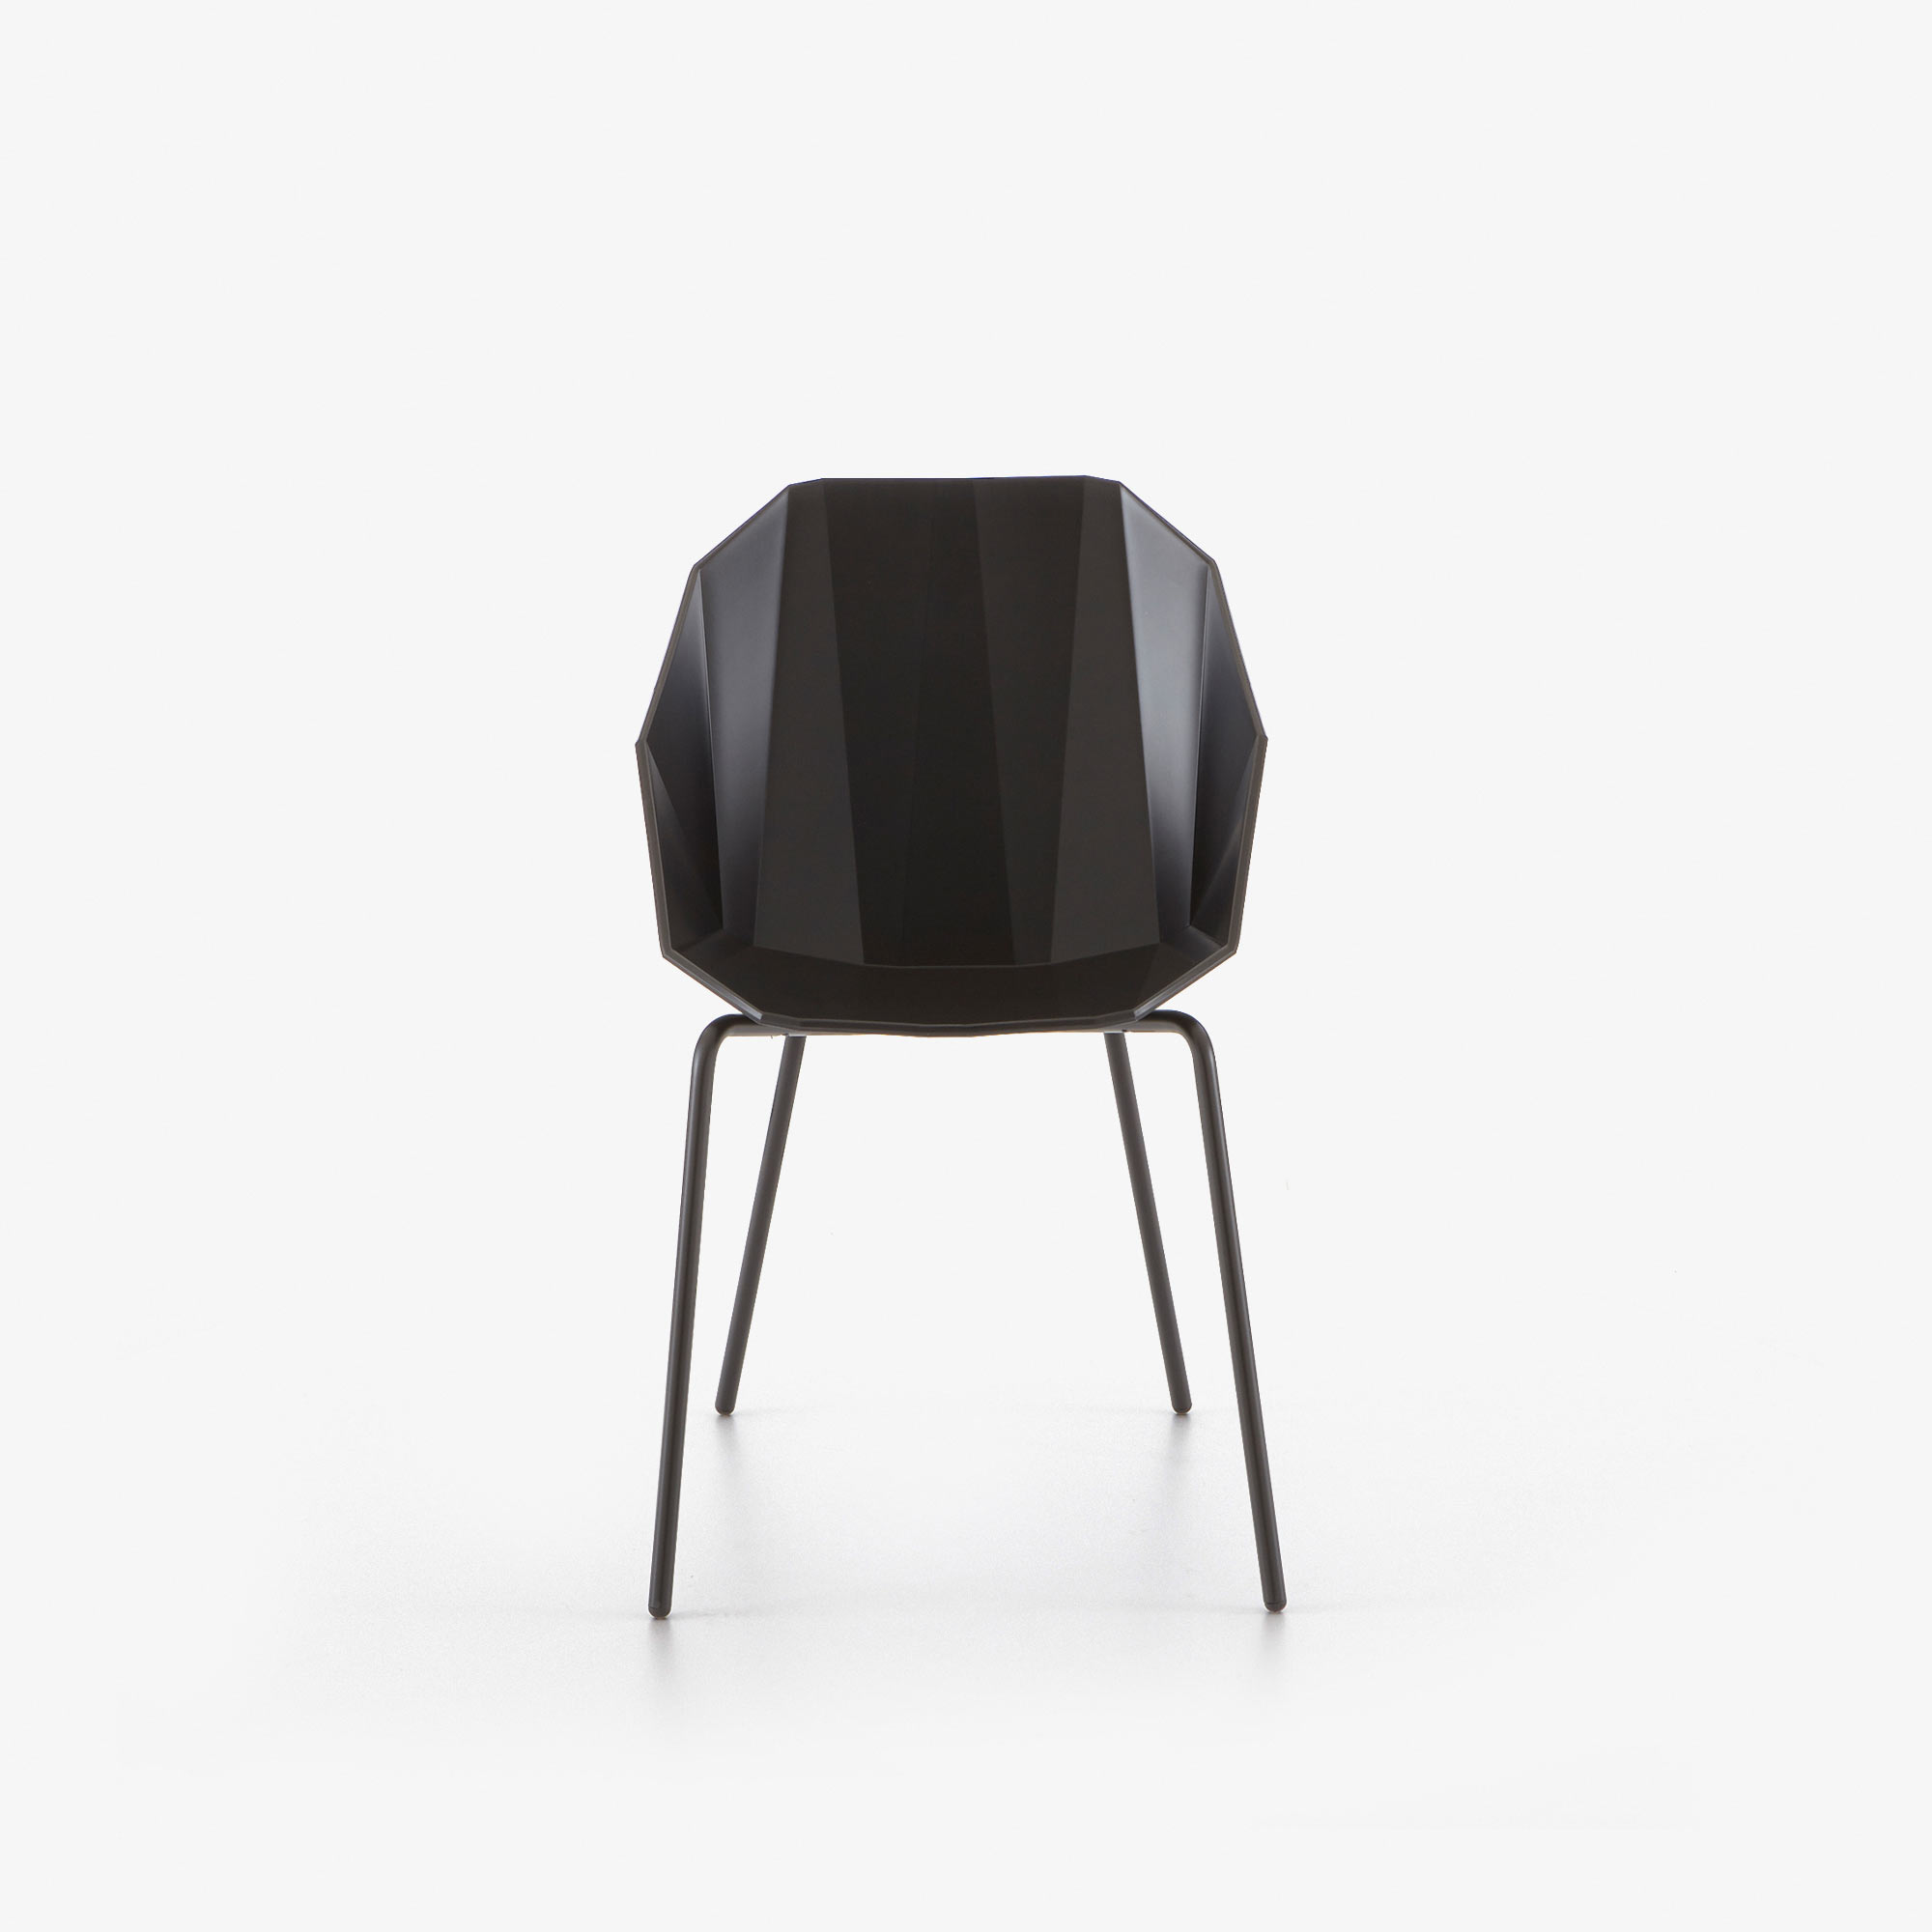 Image 椅子/桥形结构 黑色 黑色烤水性漆底座 1